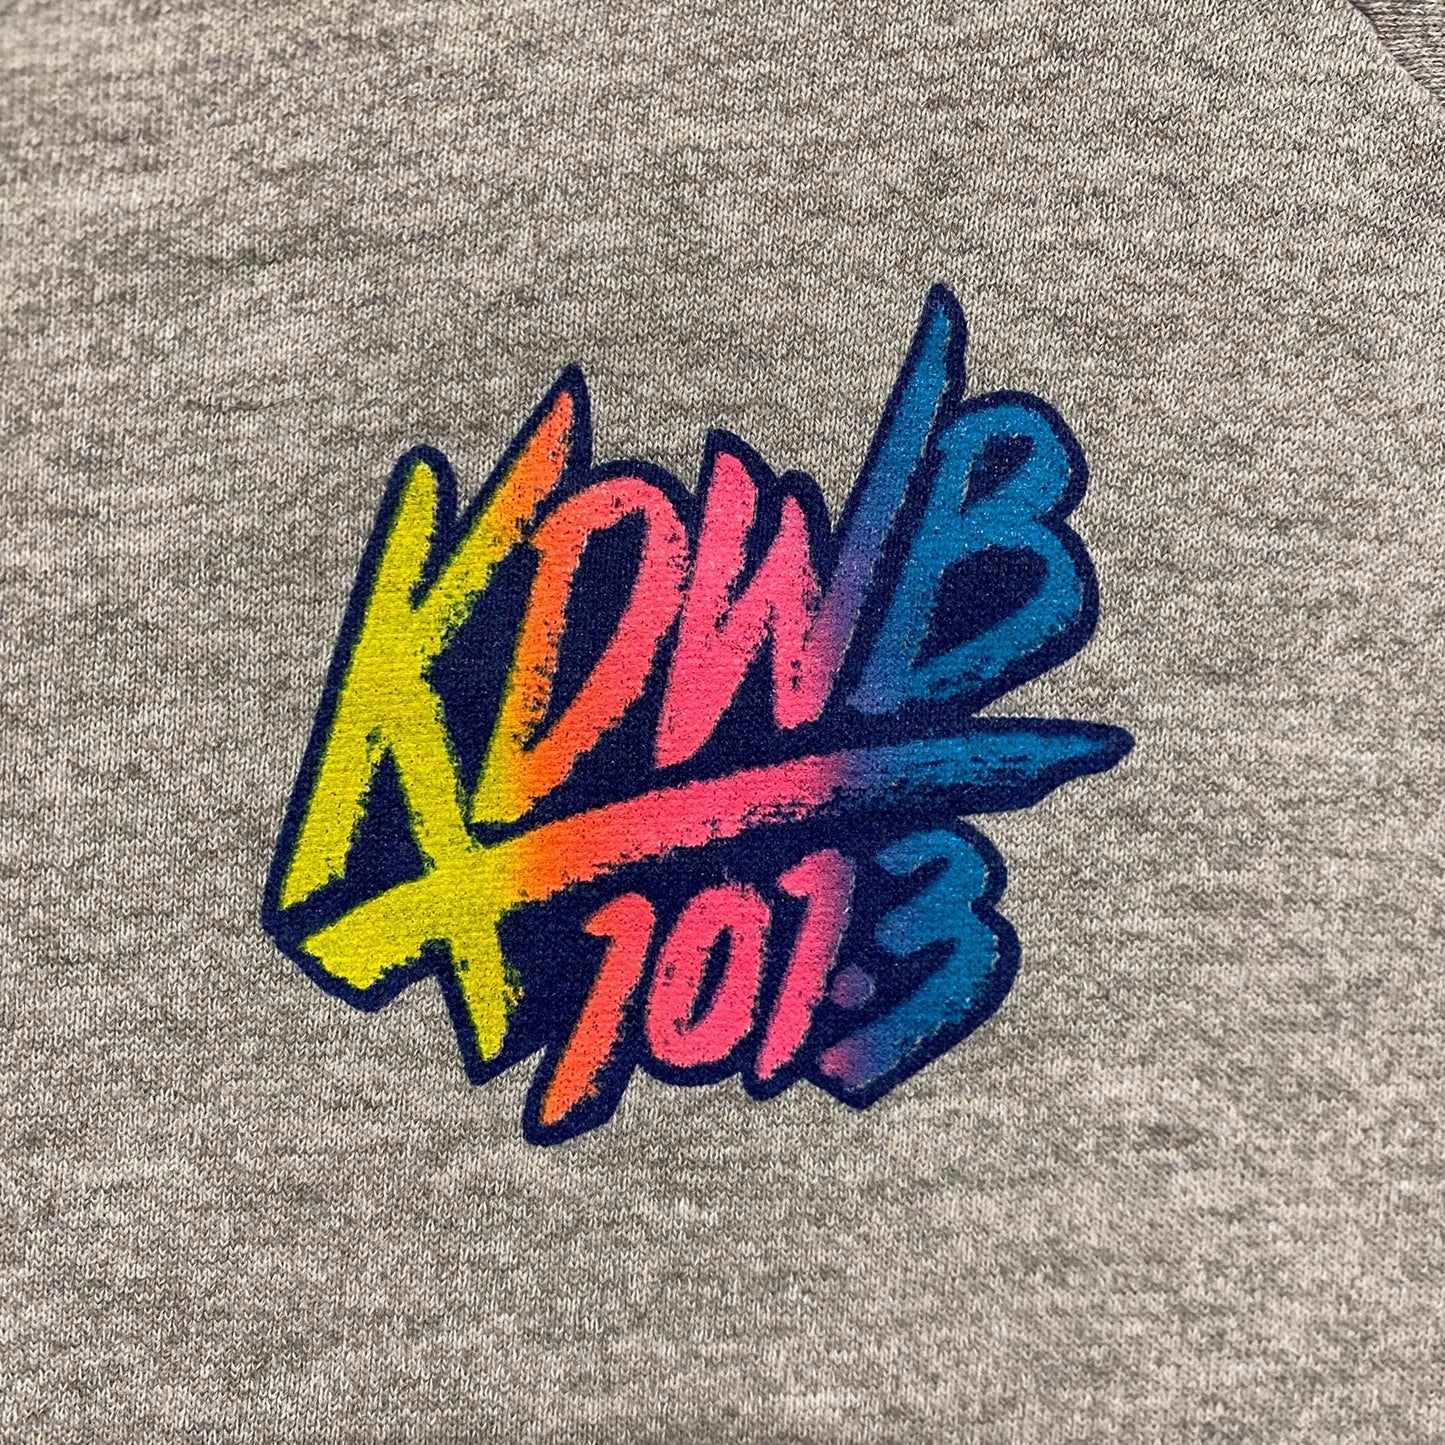 Vintage 90s KDWB 101.3 Radio Minnesota Crewneck Sweatshirt